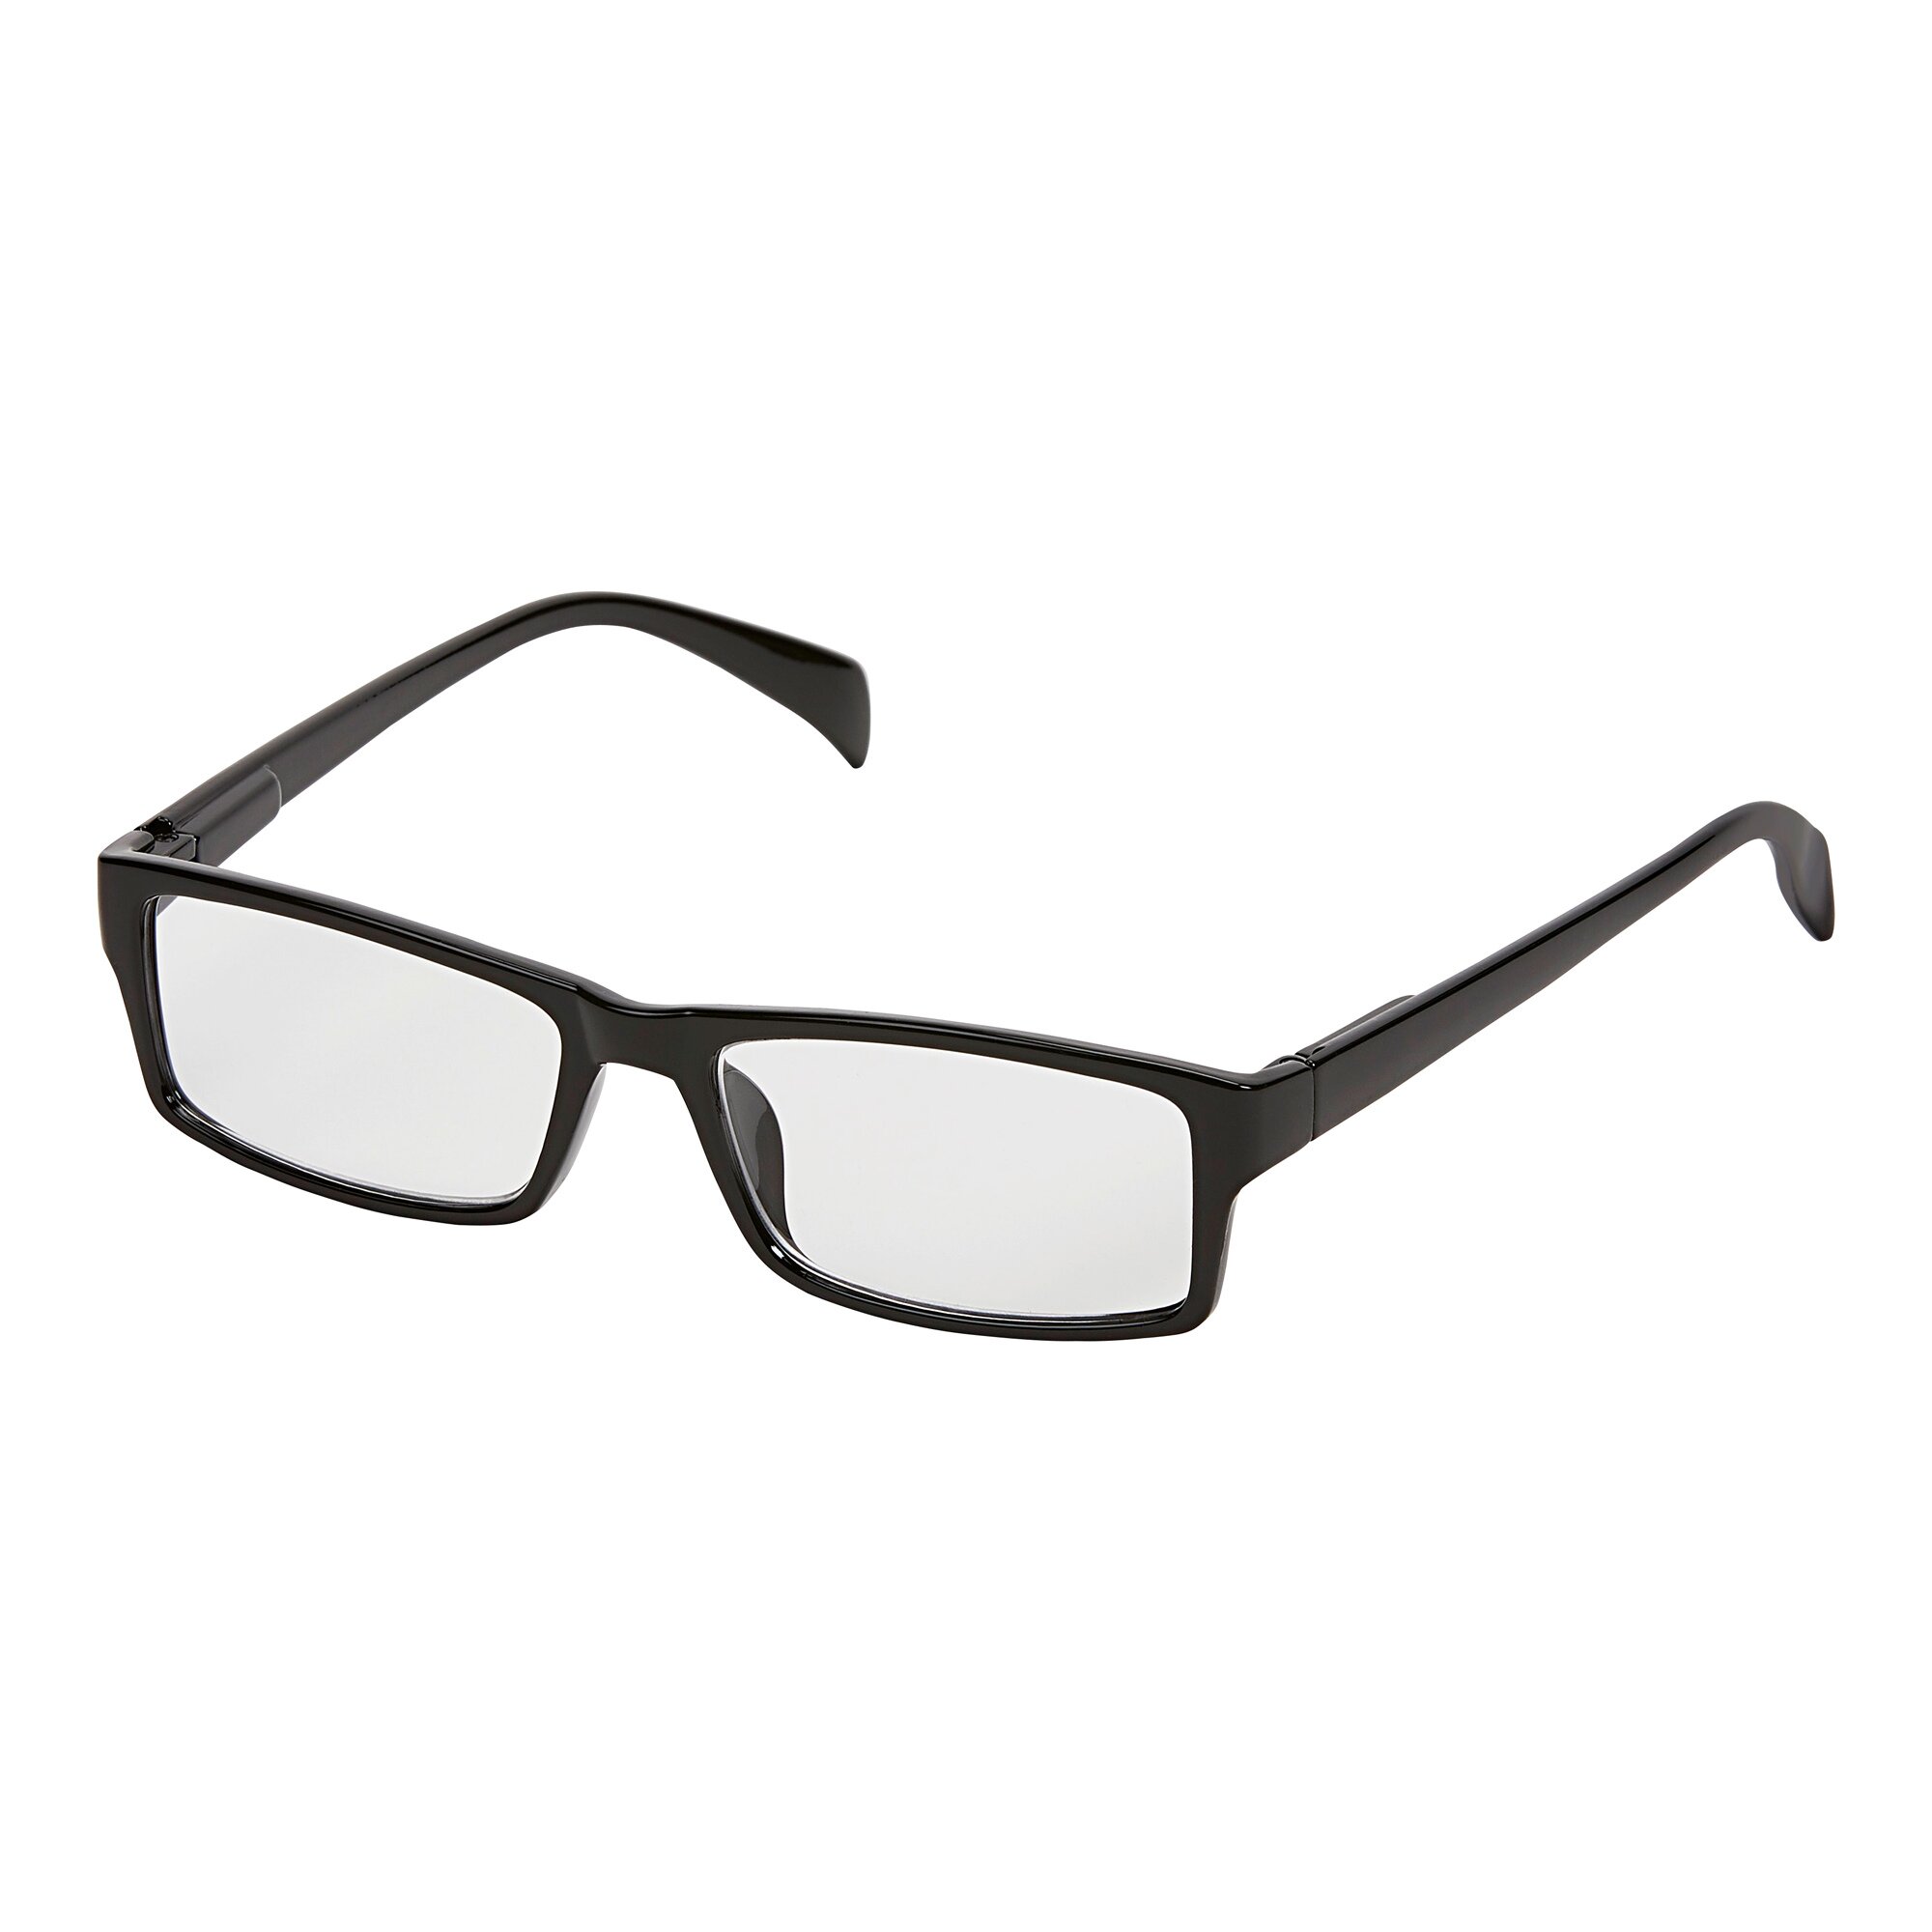 Image of Mehrstärkenbrille "One Power Readers", schwarz